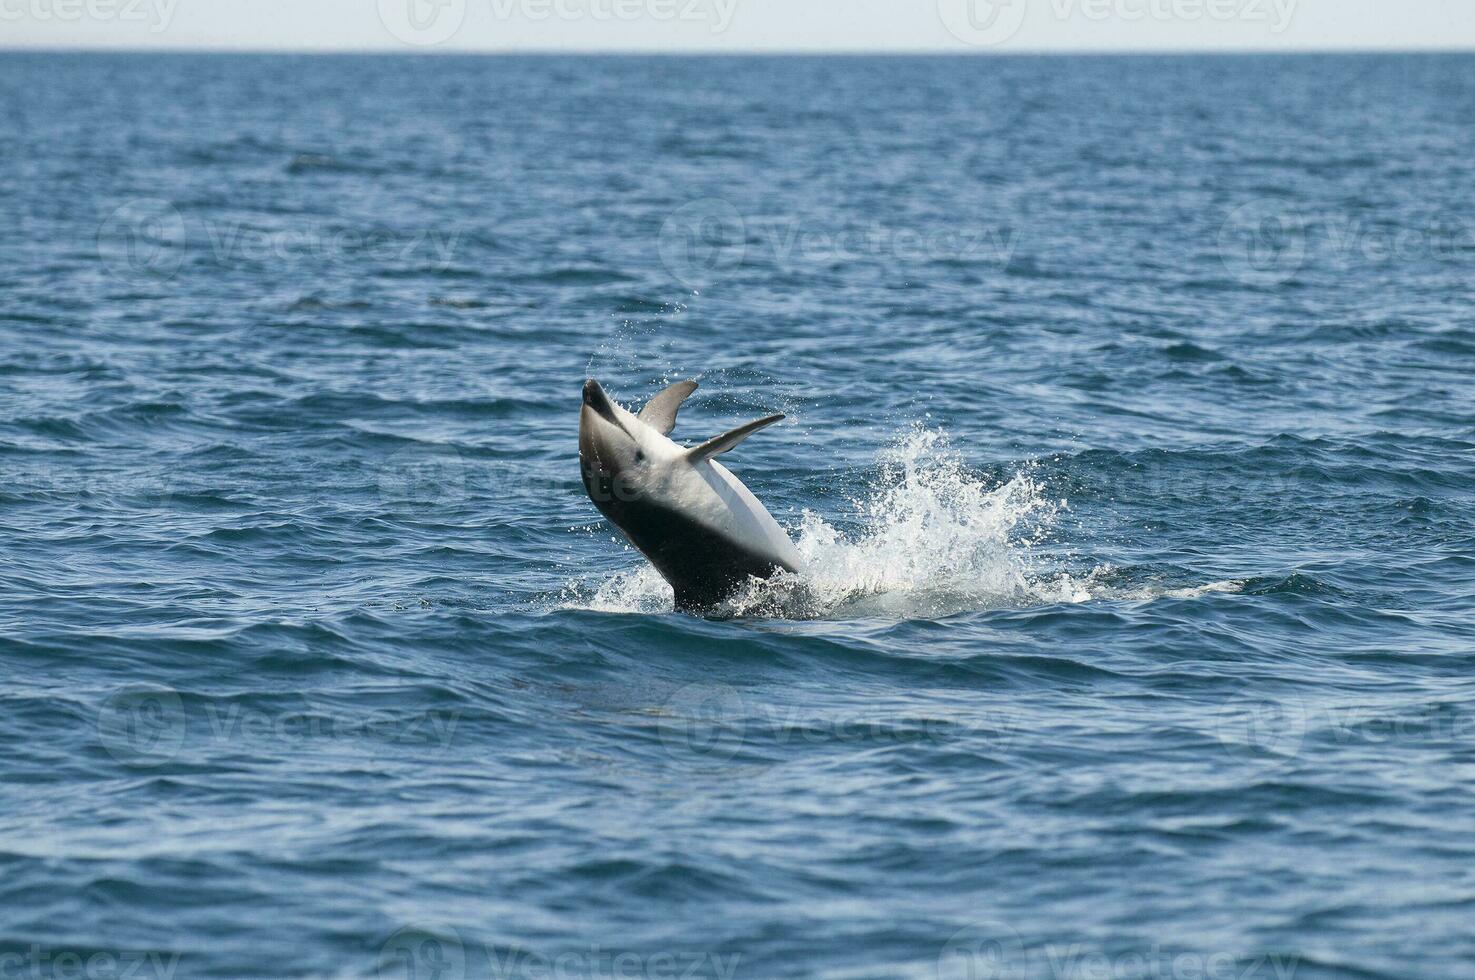 obscuro golfinho pulando, Península valdes, patagônia, argentina foto